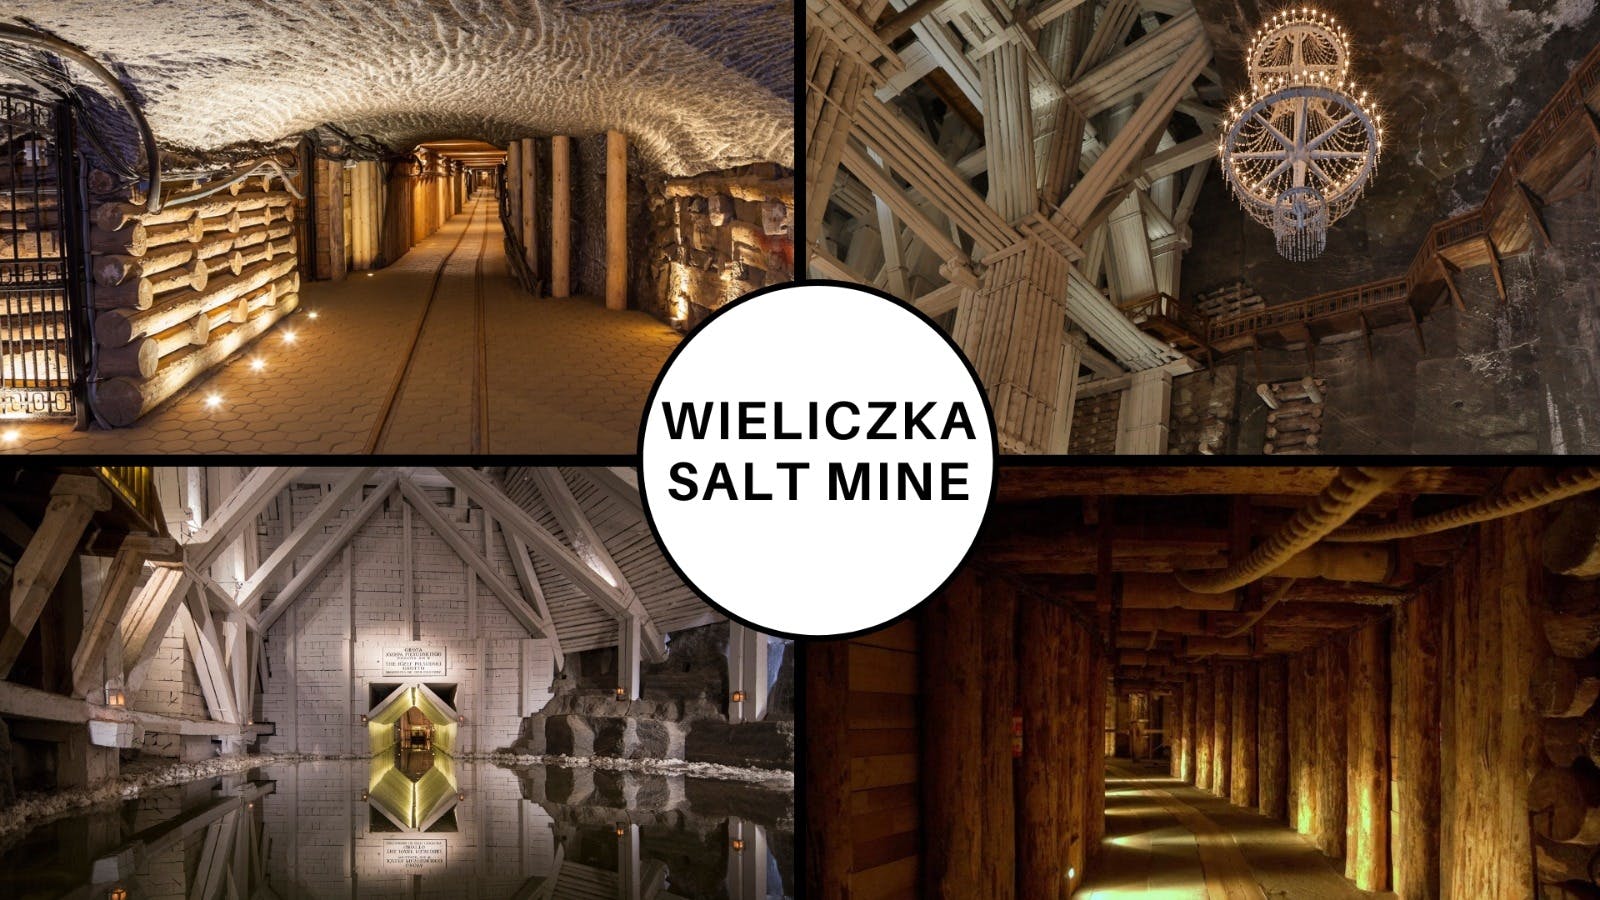 Wieliczka Salt Mine guided tour from Kraków